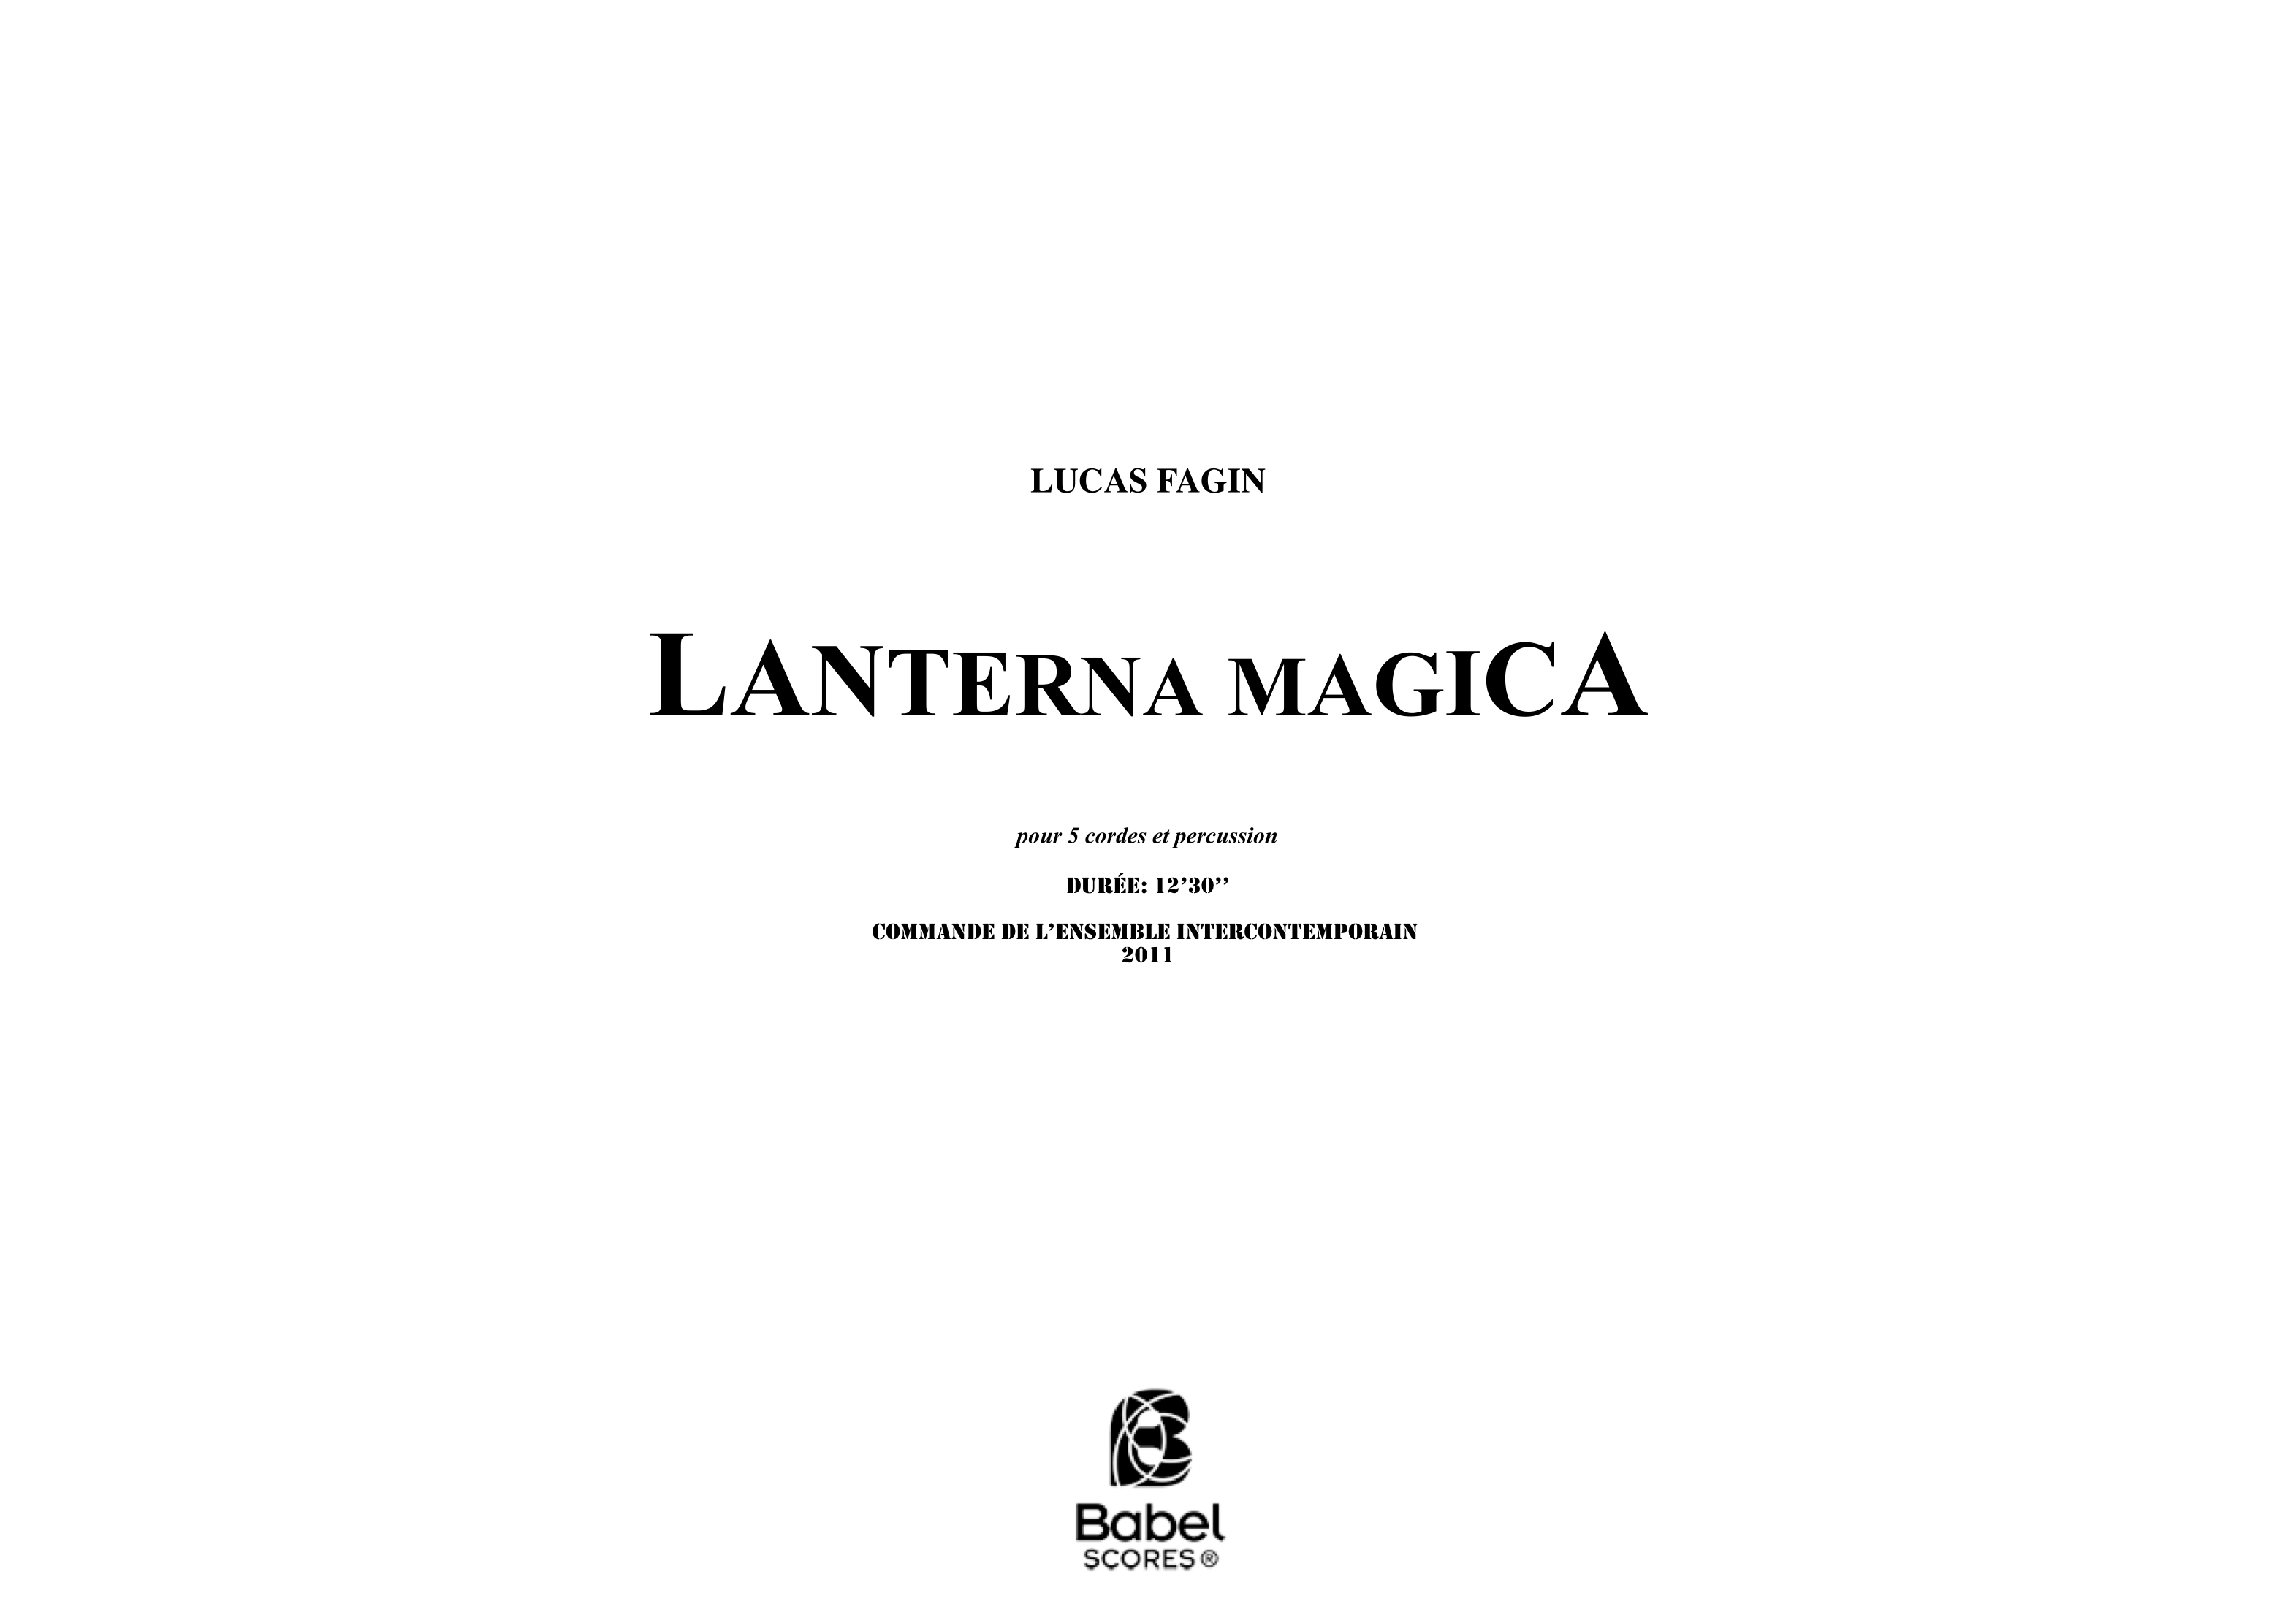 LANTERNA MAGICA BabelScores edition z